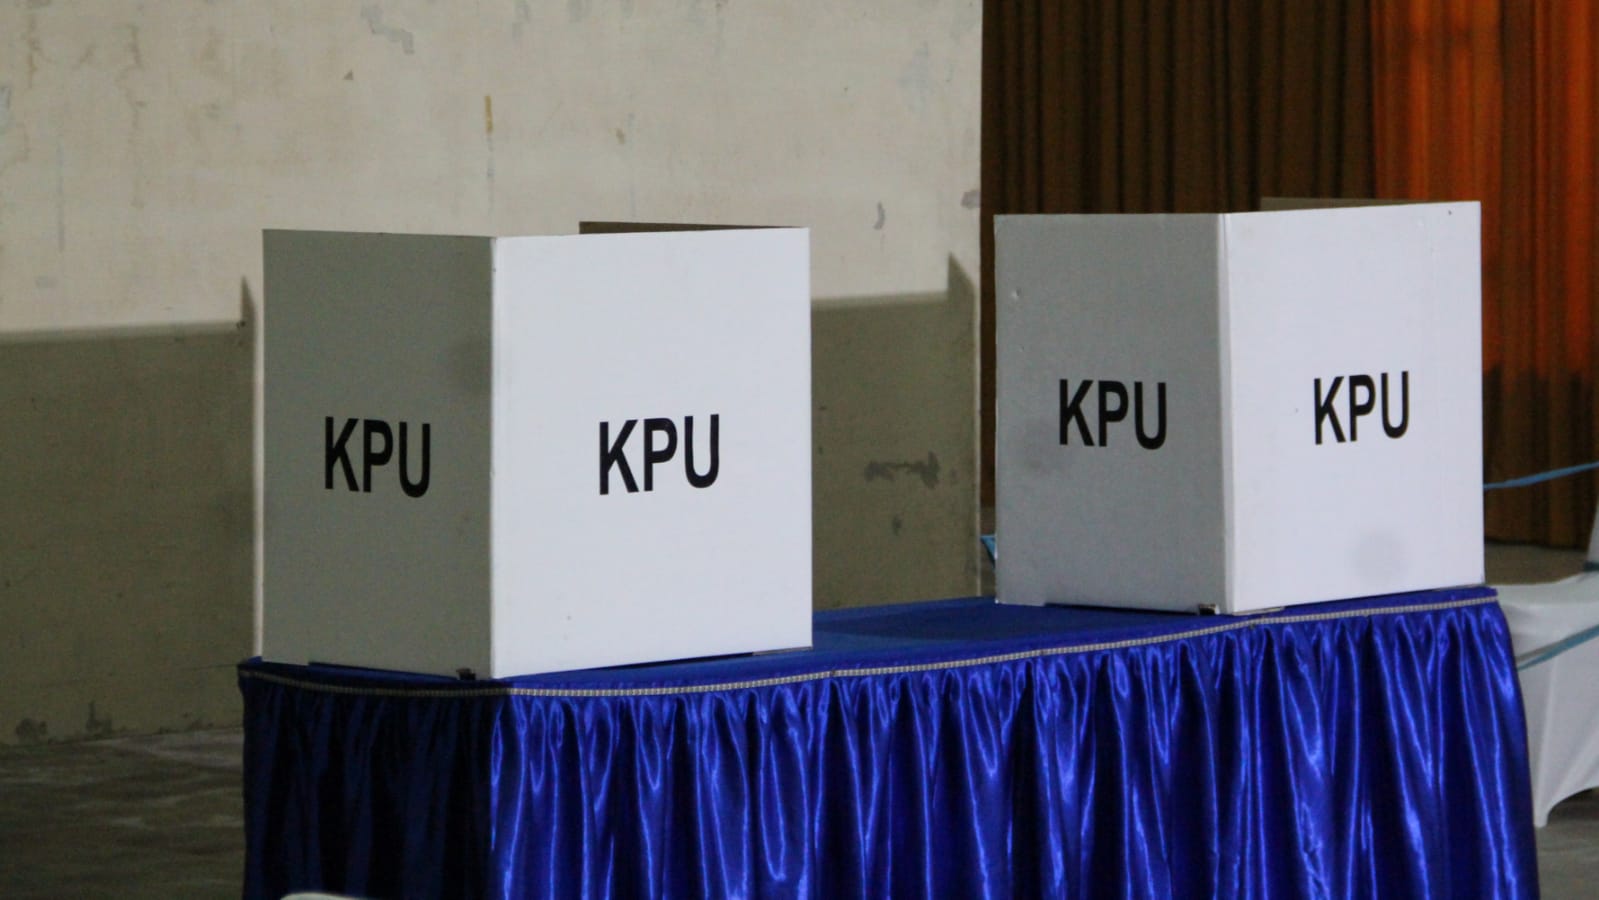 Kotak pemungutan suara oleh KPU Trenggalek